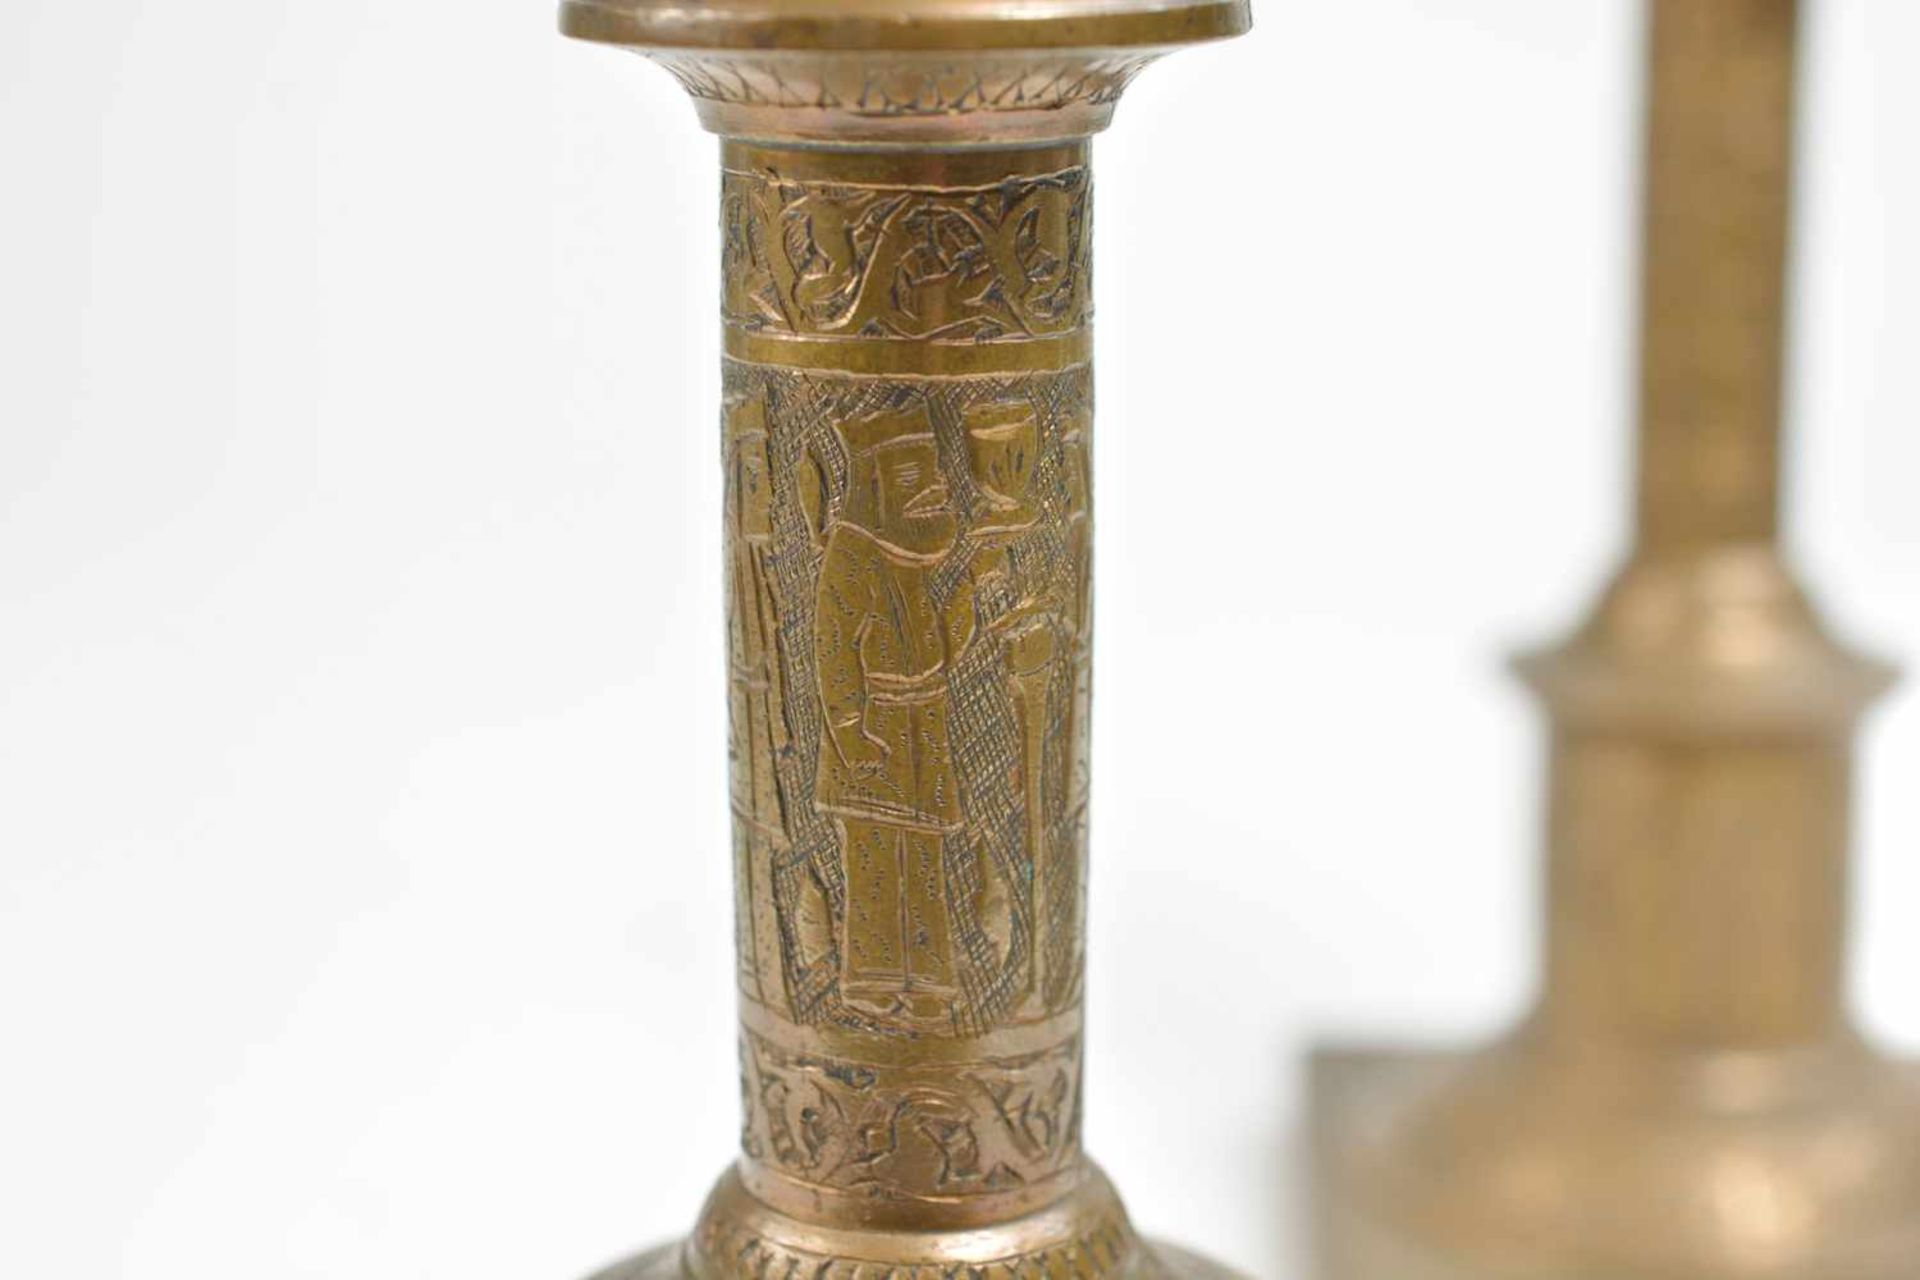 Paar Kerzenleuchter mit Motiven20. Jh., Bronze, leicht bräunlich patiniert, Höhe 22,5 - Bild 3 aus 3